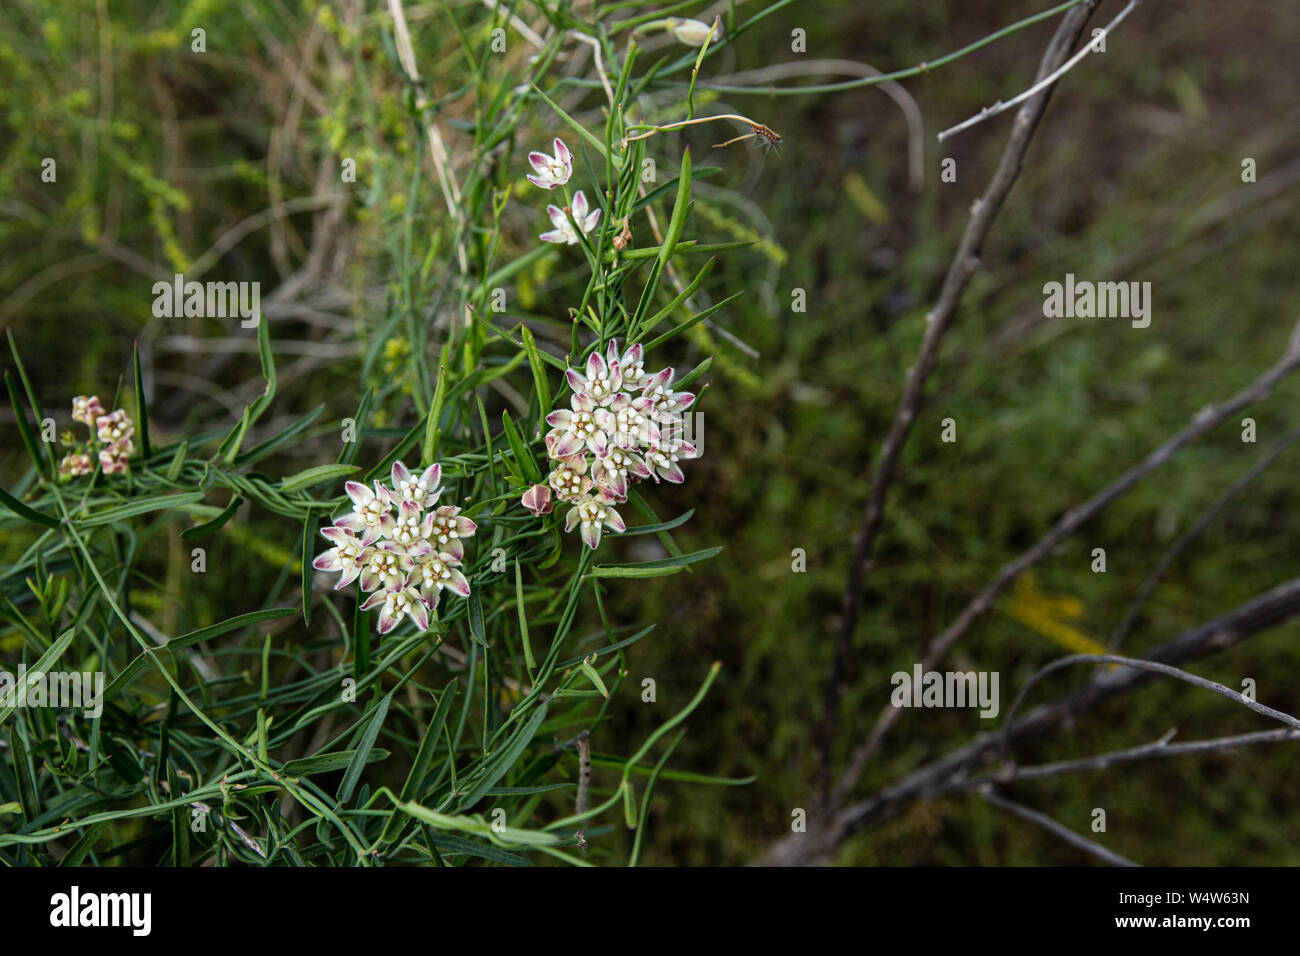 L'asclépiade a Twinevine ombelles délicates de fleurs blanches et s'enroule autour d'autres plantes à atteindre pour le soleil. Banque D'Images